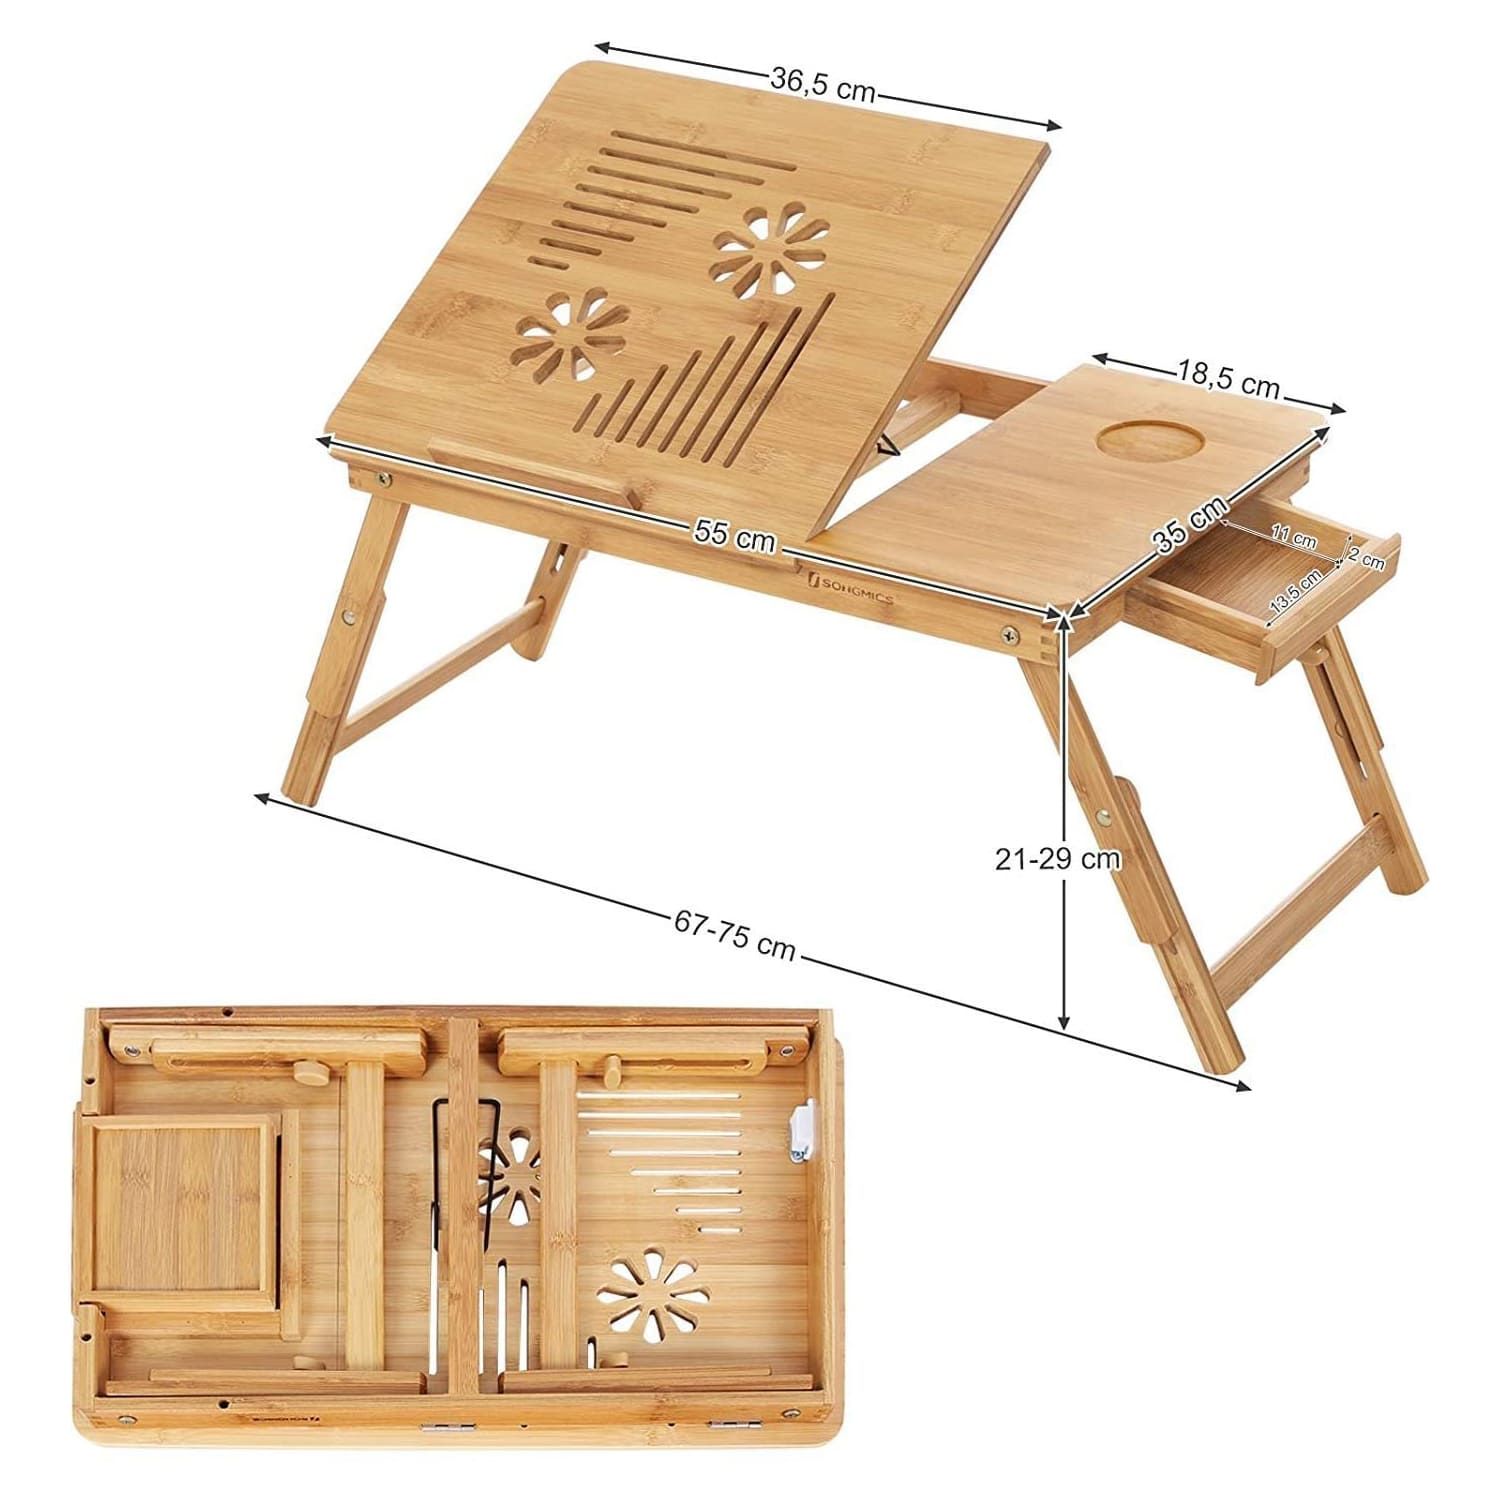 Table en bambou, Plateau pliable et ajustable en hauteur (5 niveaux). Grande surface de 55 x 35 cm - SONGMICS